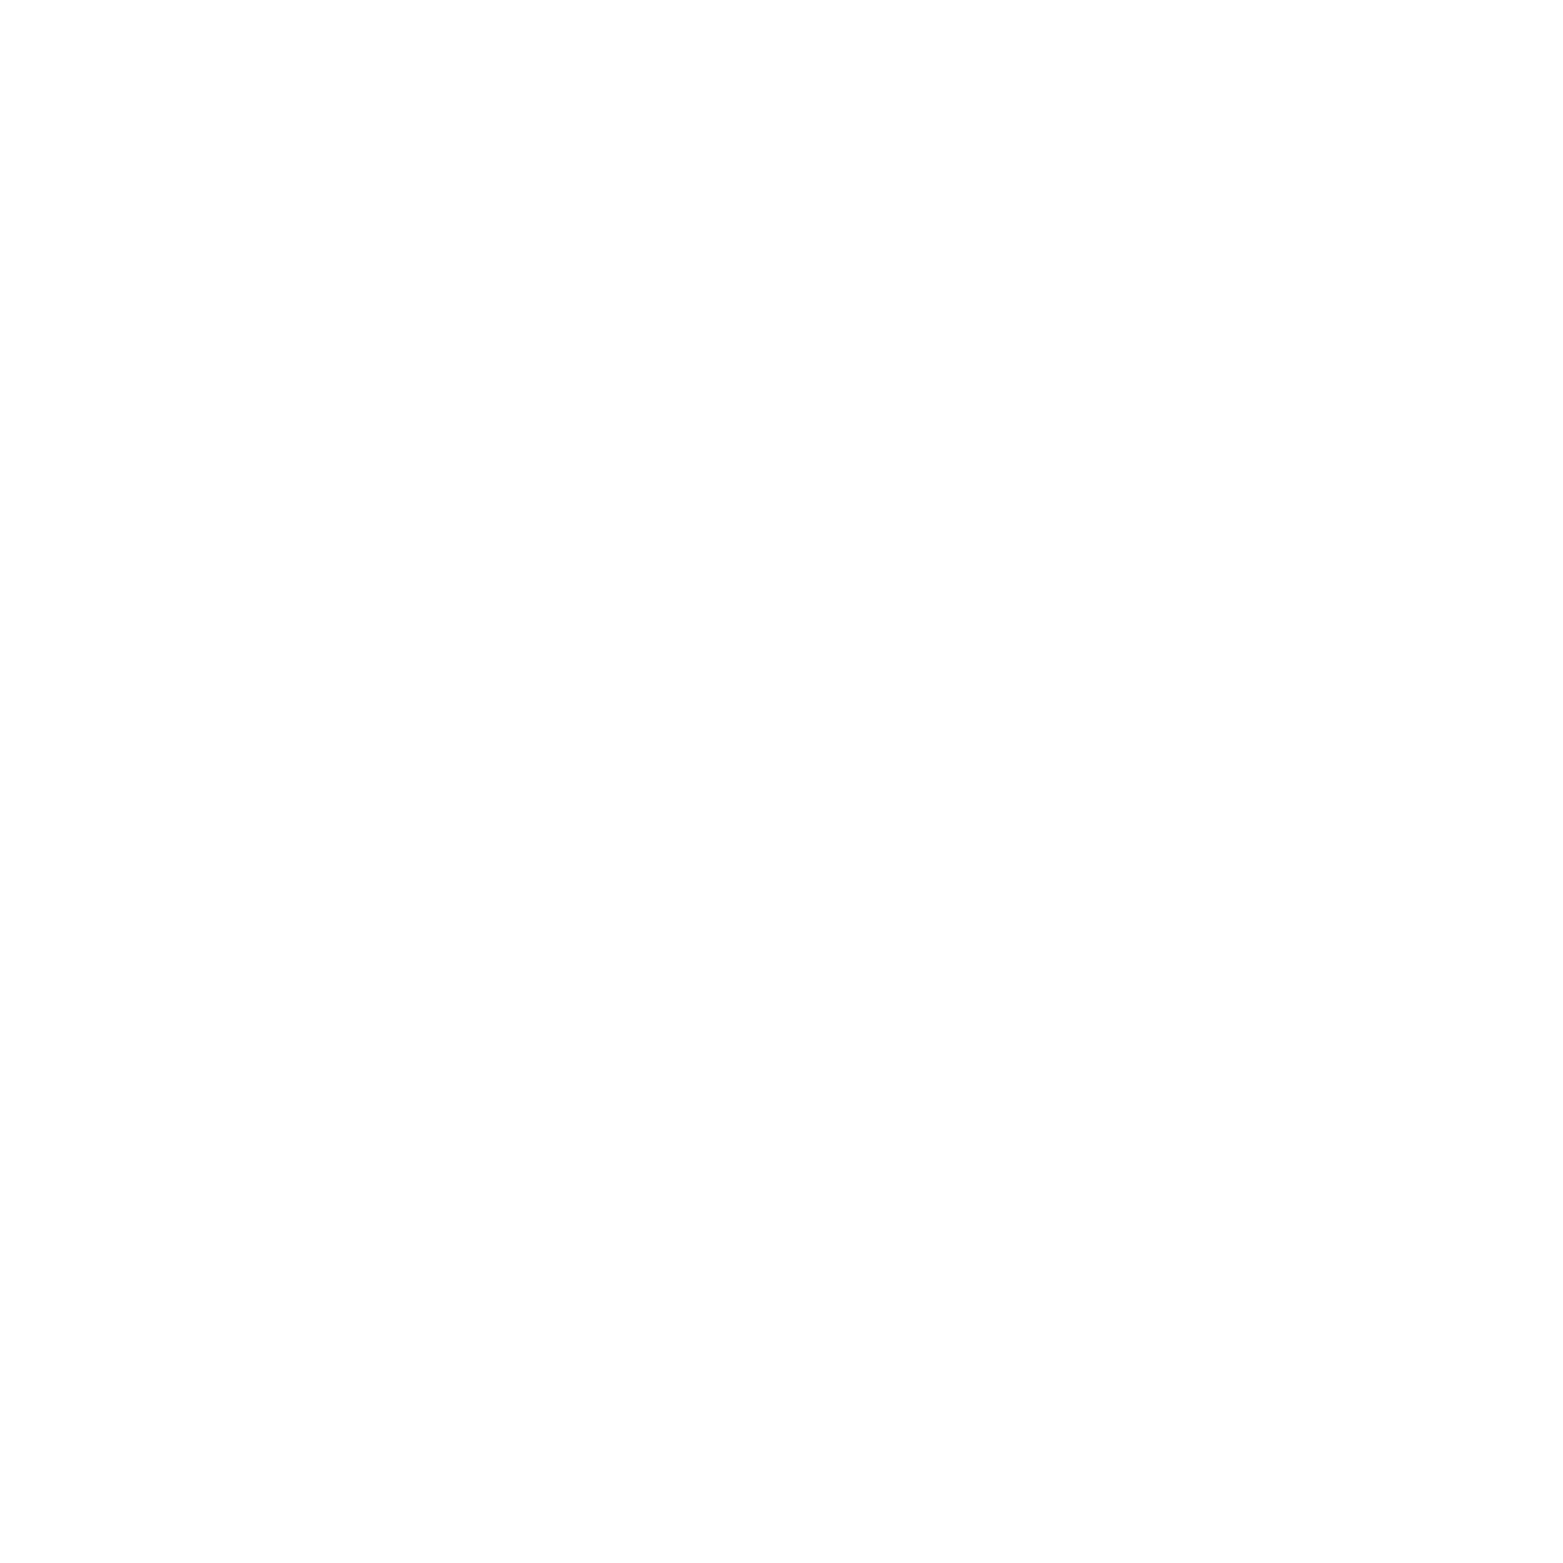 sx2 design build